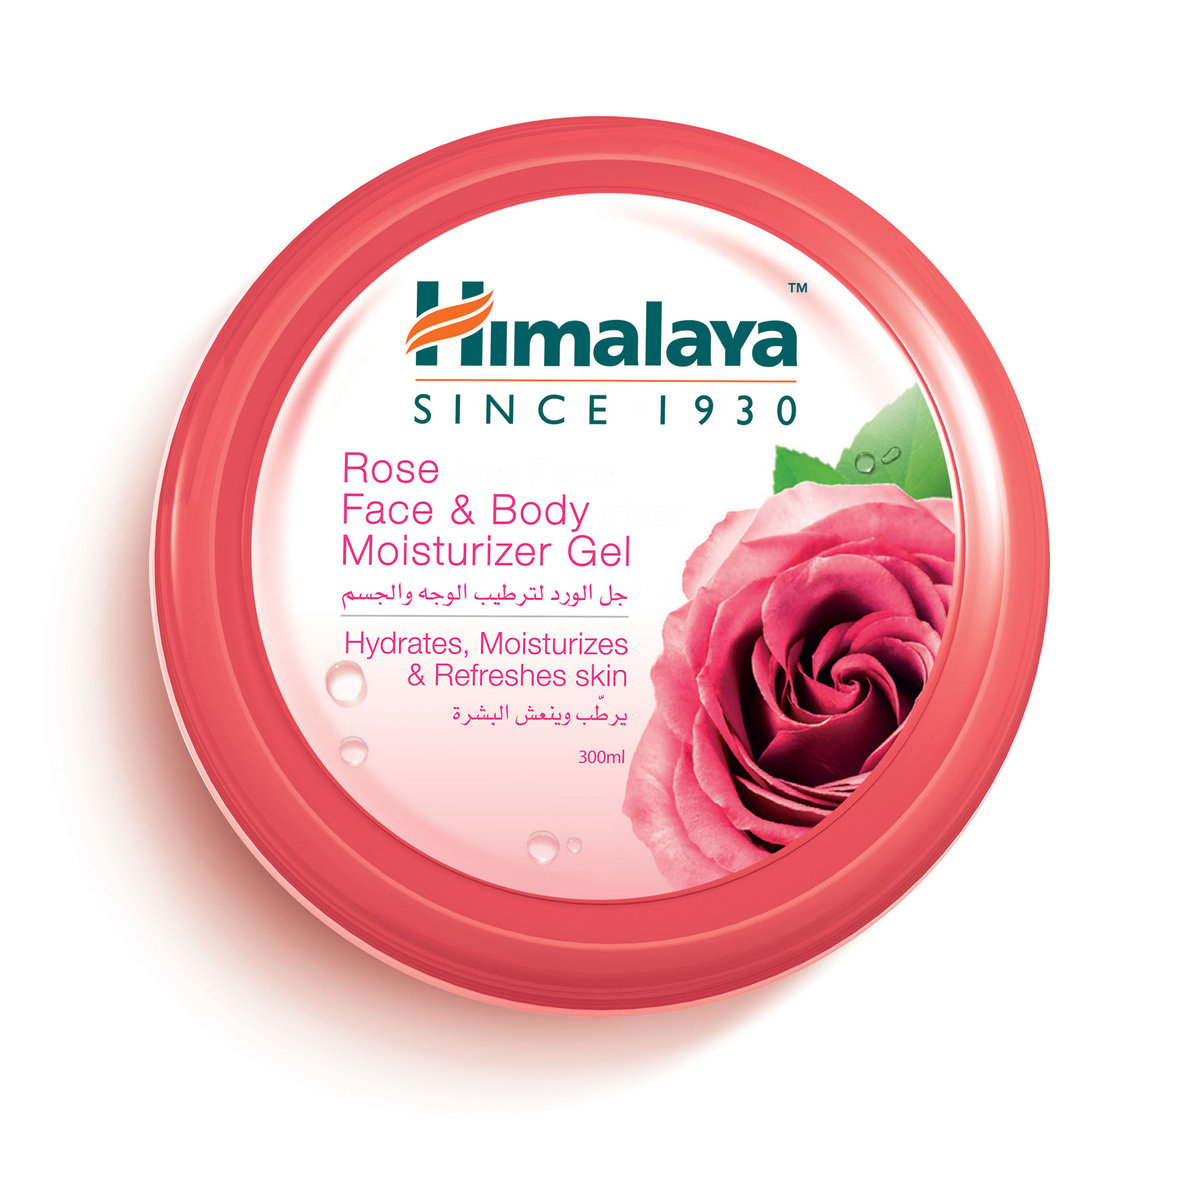 Himalaya Face & Body Moisturizer Gel Rose, 300 ml